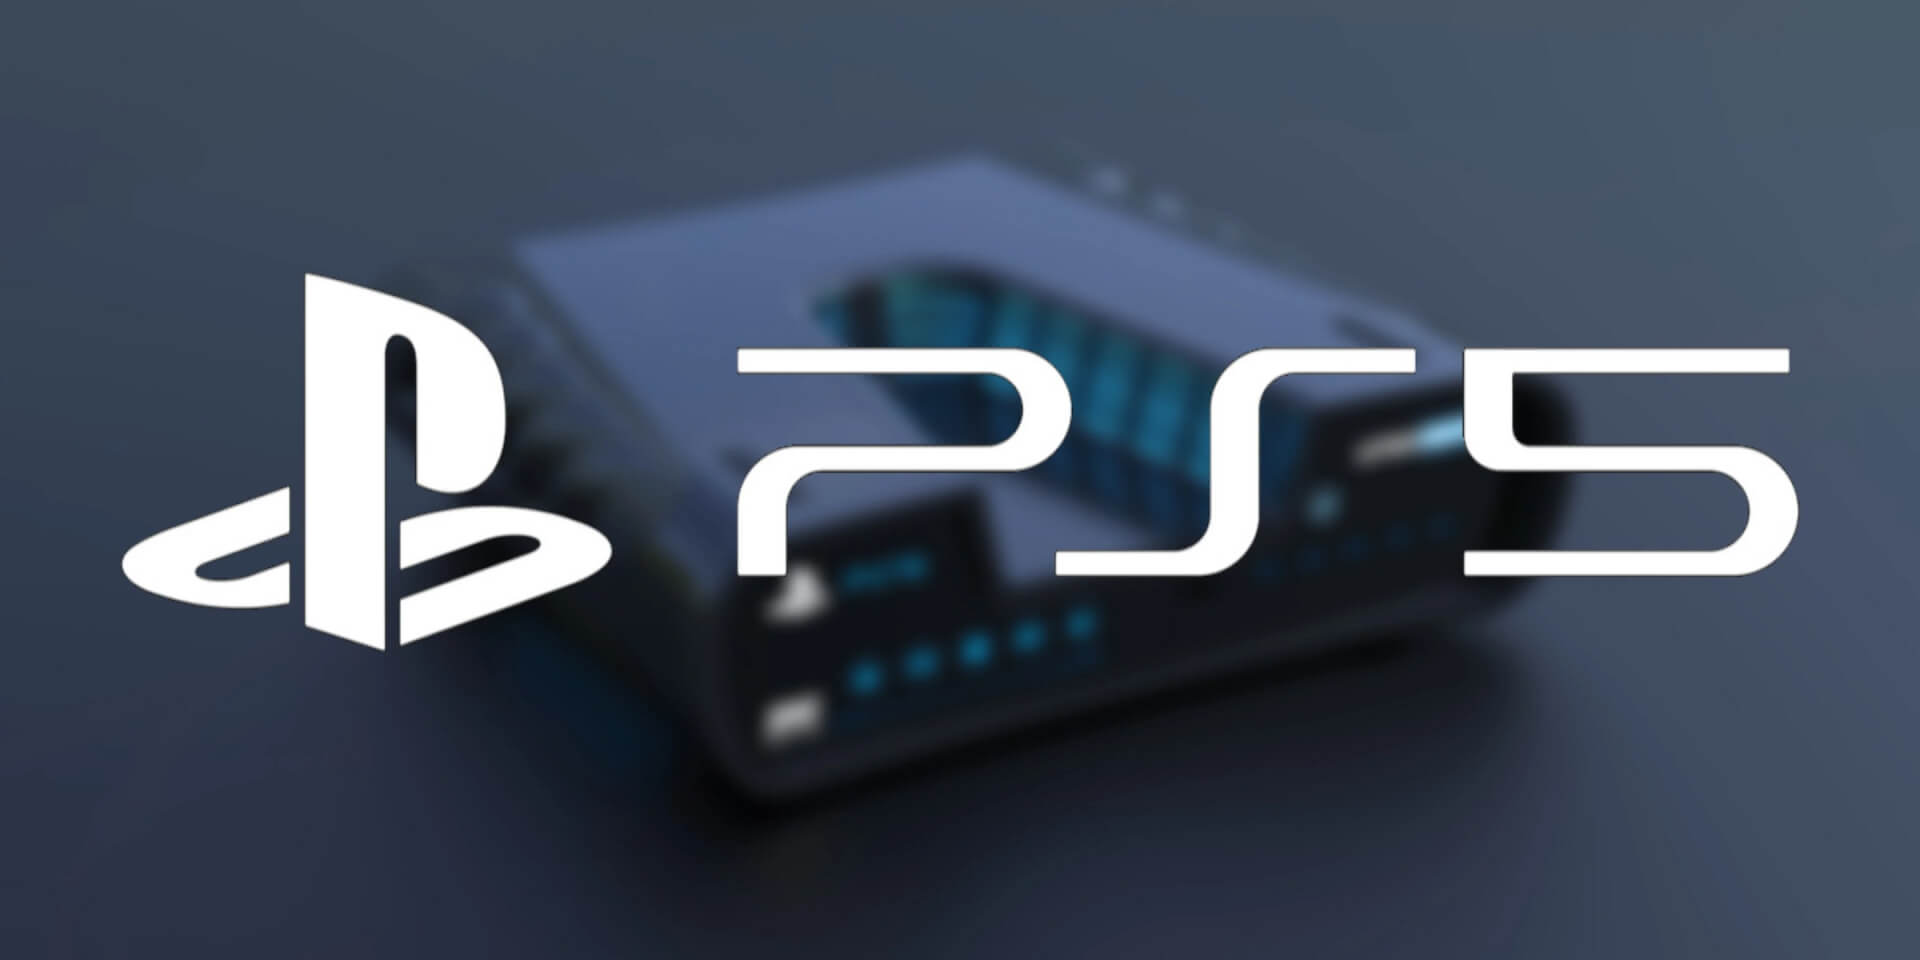 Lehet messzebb vagyunk a PS5 leleplezéstől, mint gondoltuk